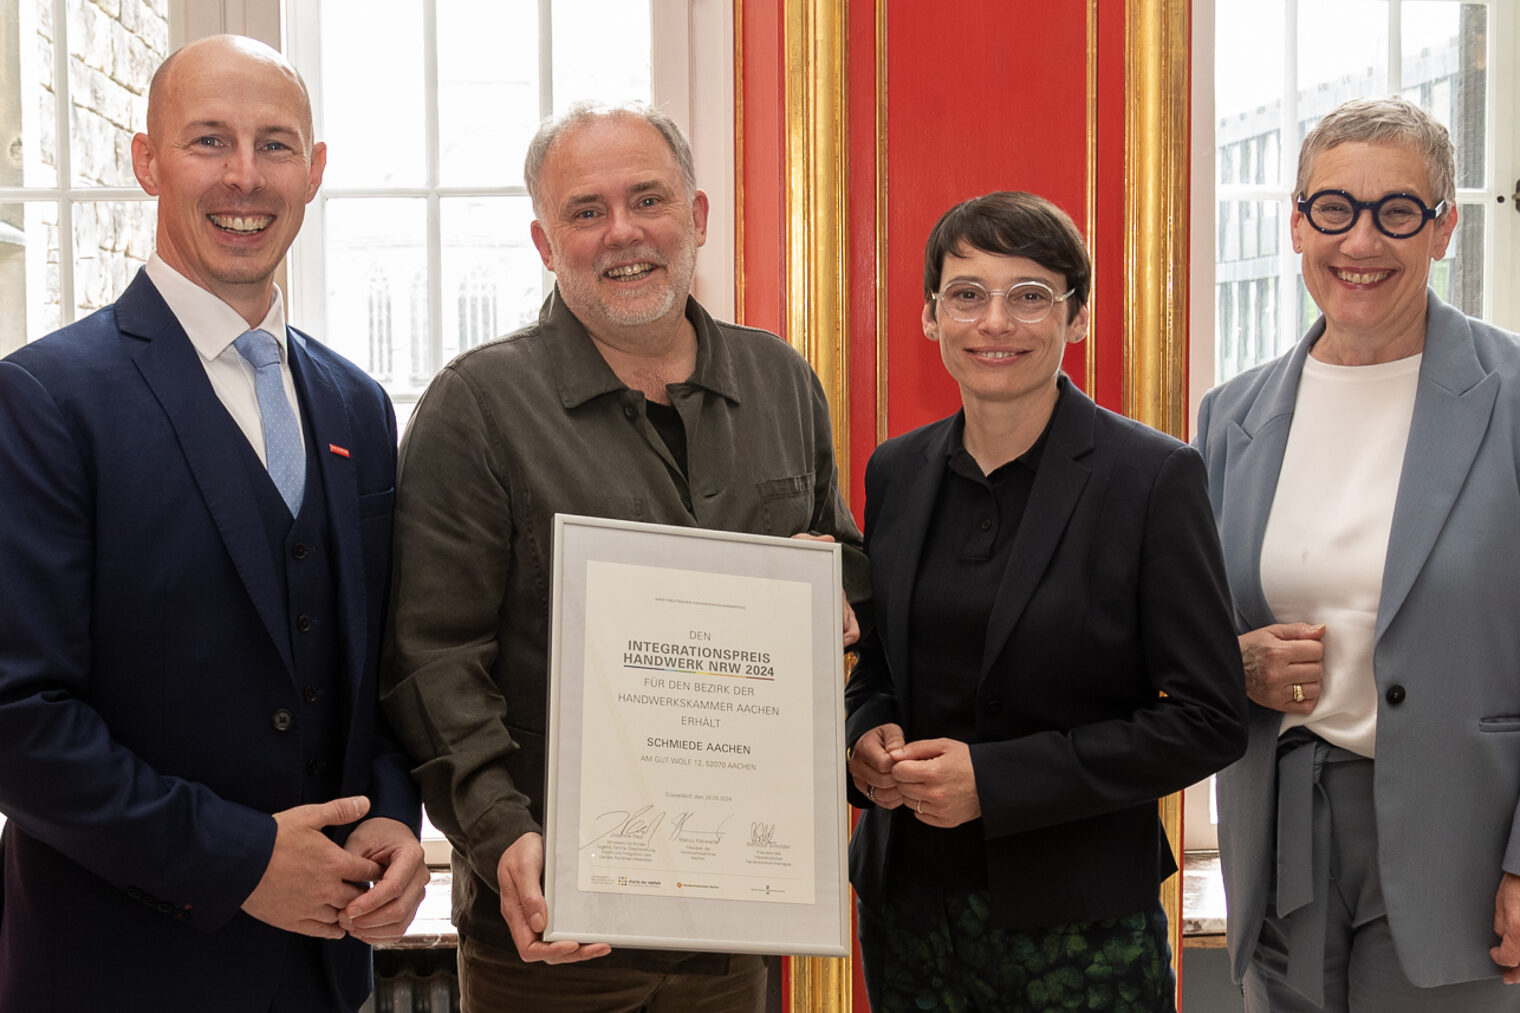 Feierstunde im Aachener Rathaus: Michael Hammers (2.v.l.), Schmiede Aachen, ist mit dem Integrationspreis Handwerk NRW ausgezeichnet worden. 